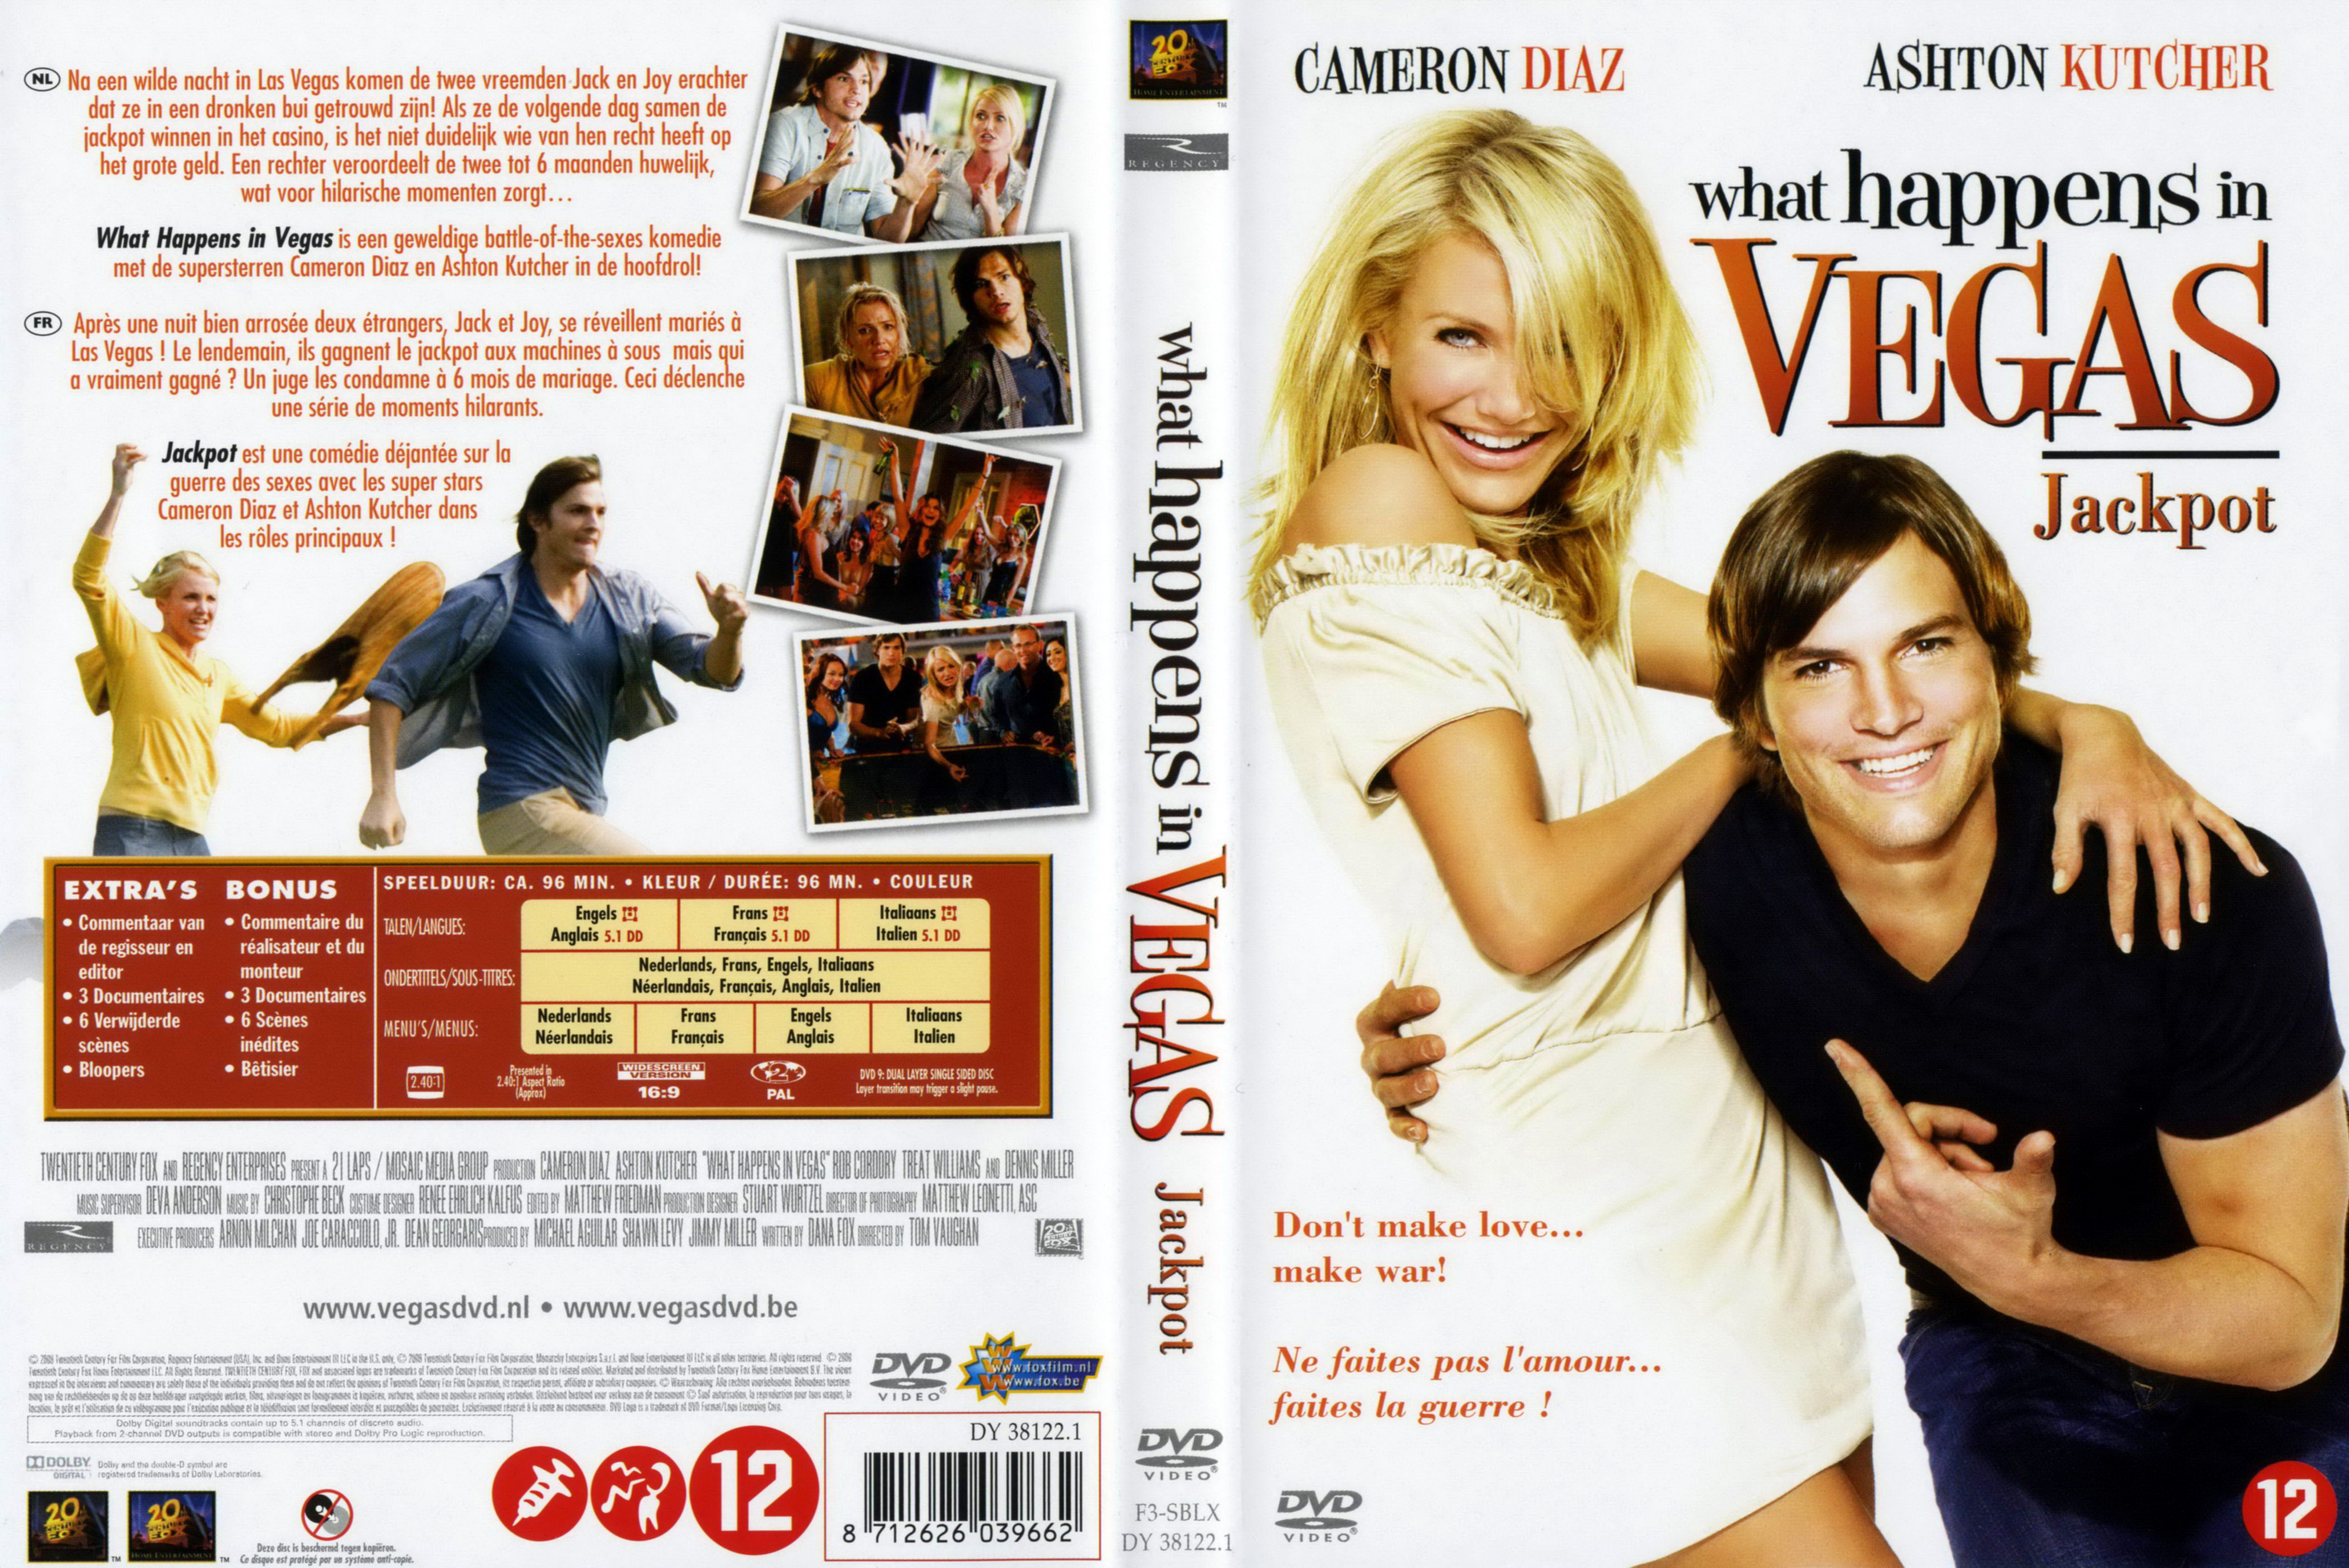 Jaquette DVD Jackpot (2008)